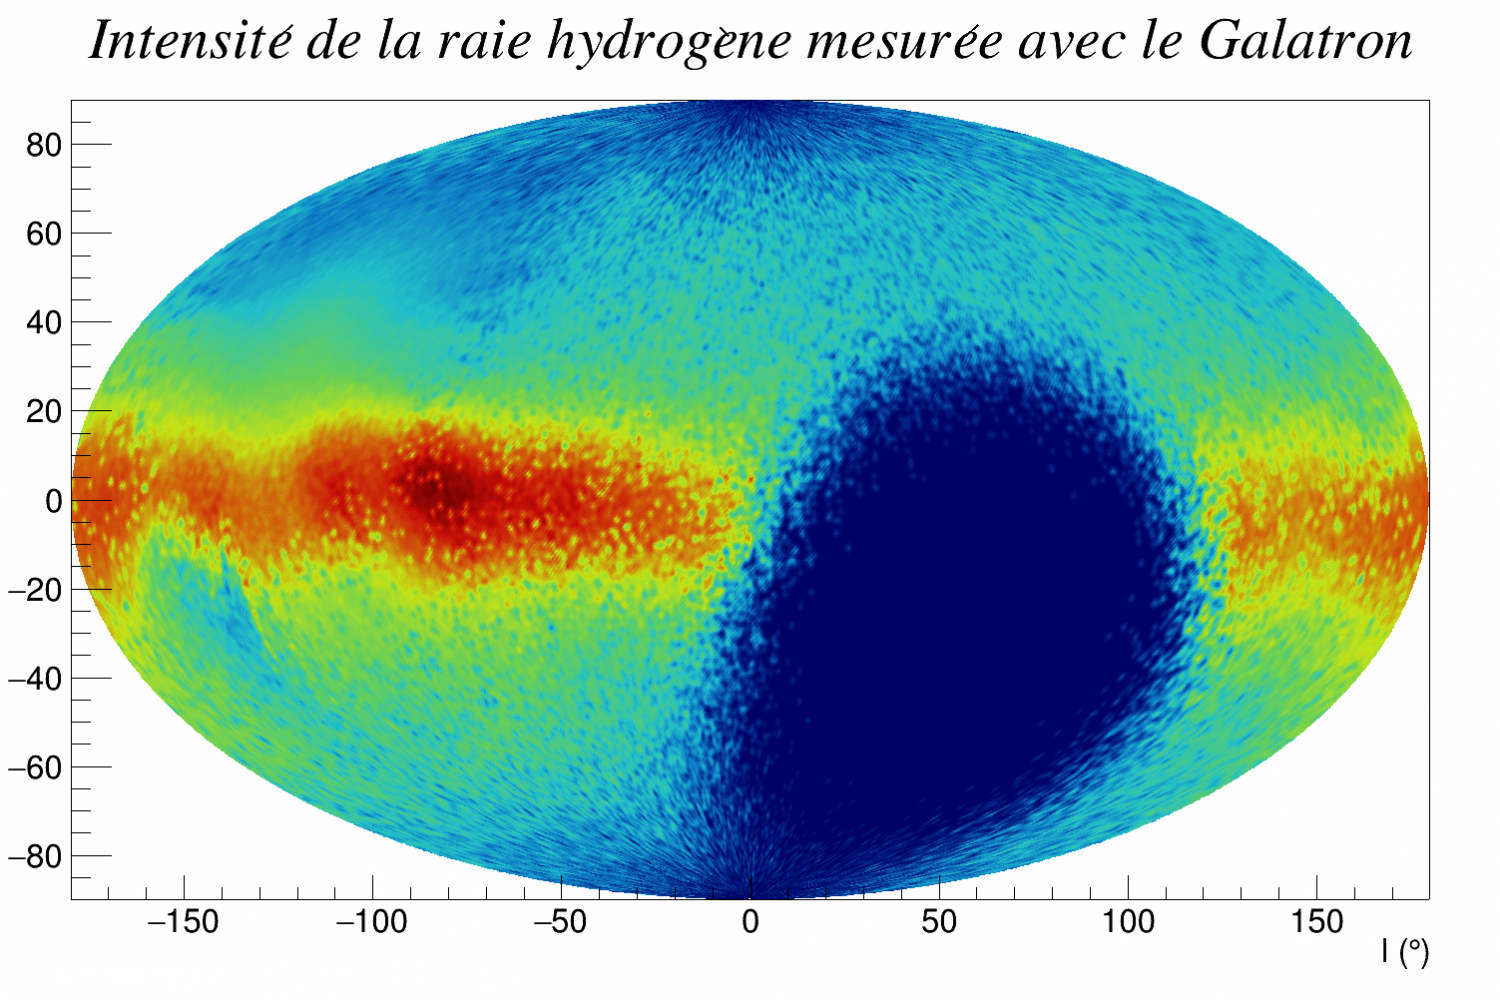 Intensité de la raie hydrogène mesurée à l'aide du Galatron dans le planisphère galactique. On observe une forte accumulation dans le plan galactique (b=0) comme attendu.